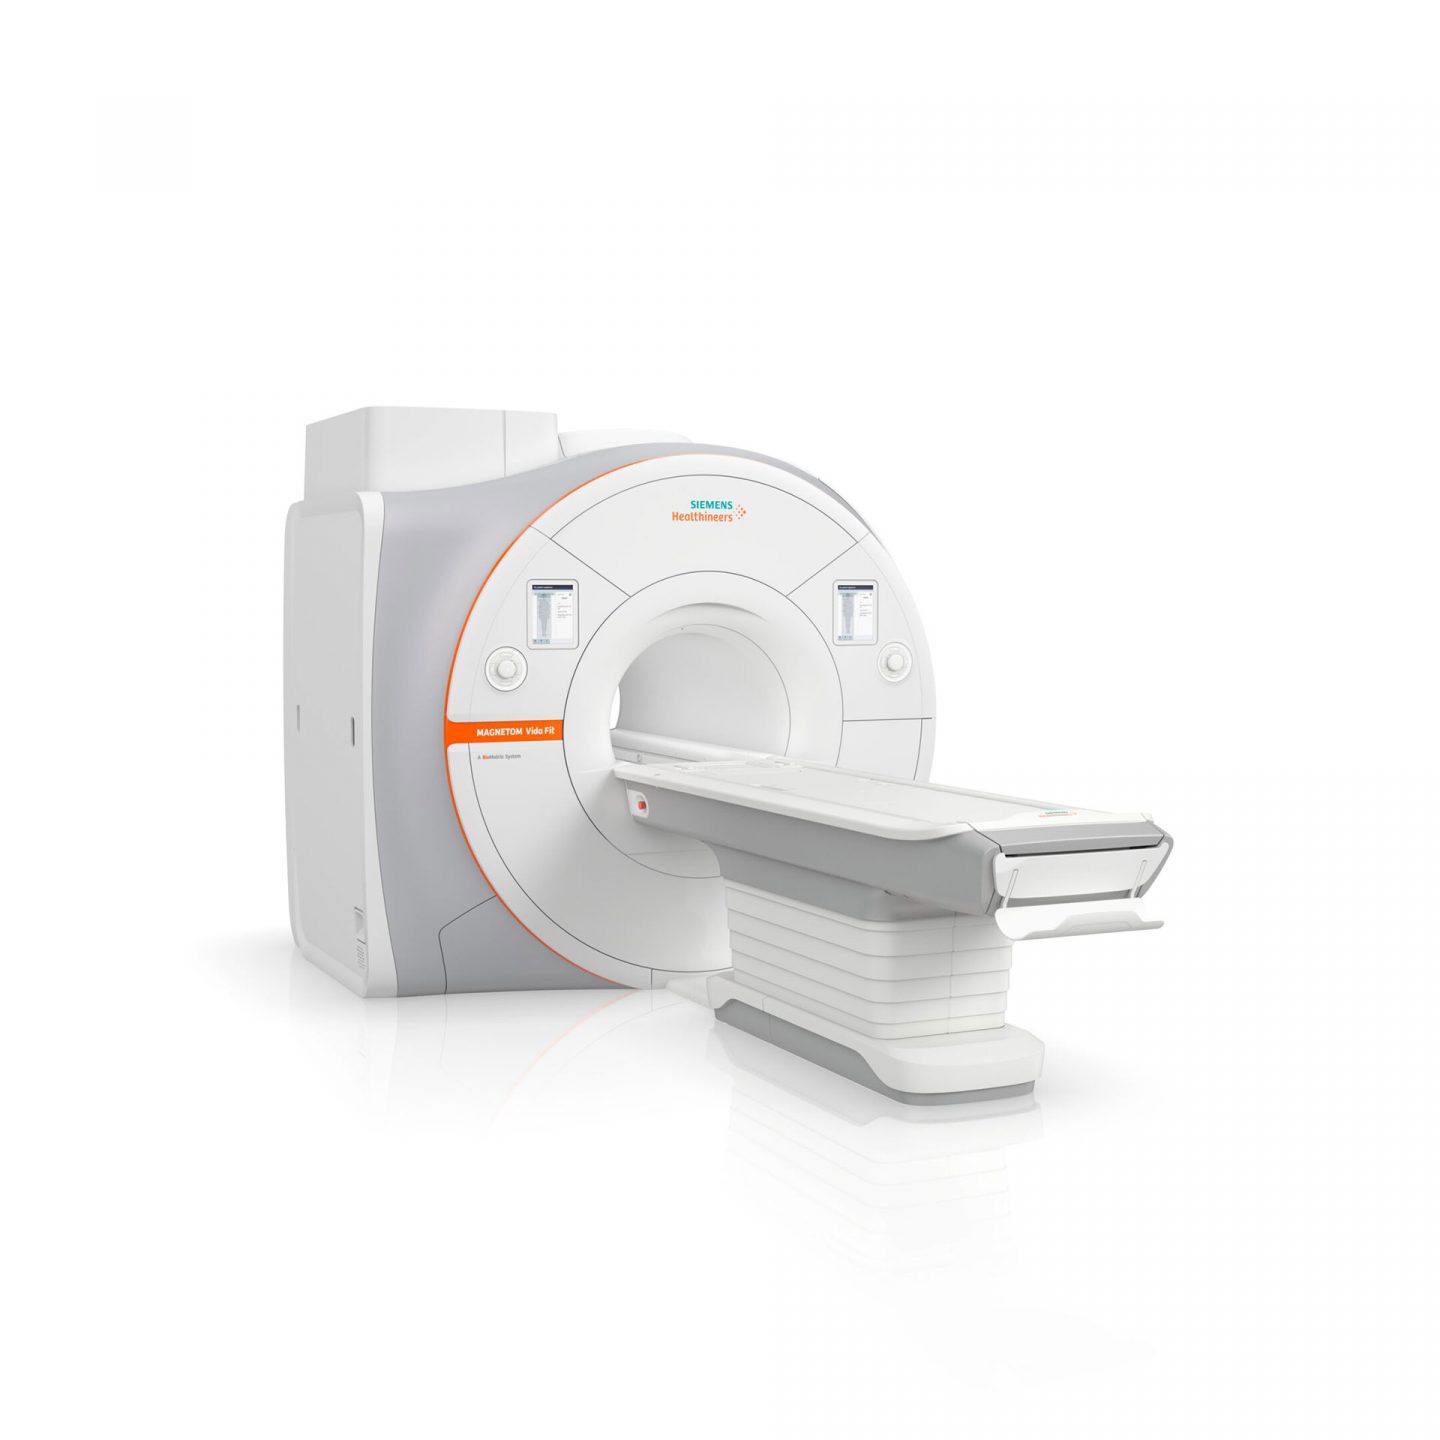 3T Magnetna rezonancija - Vrhunac MRI dijagnostike u Hrvatskoj - Affidea